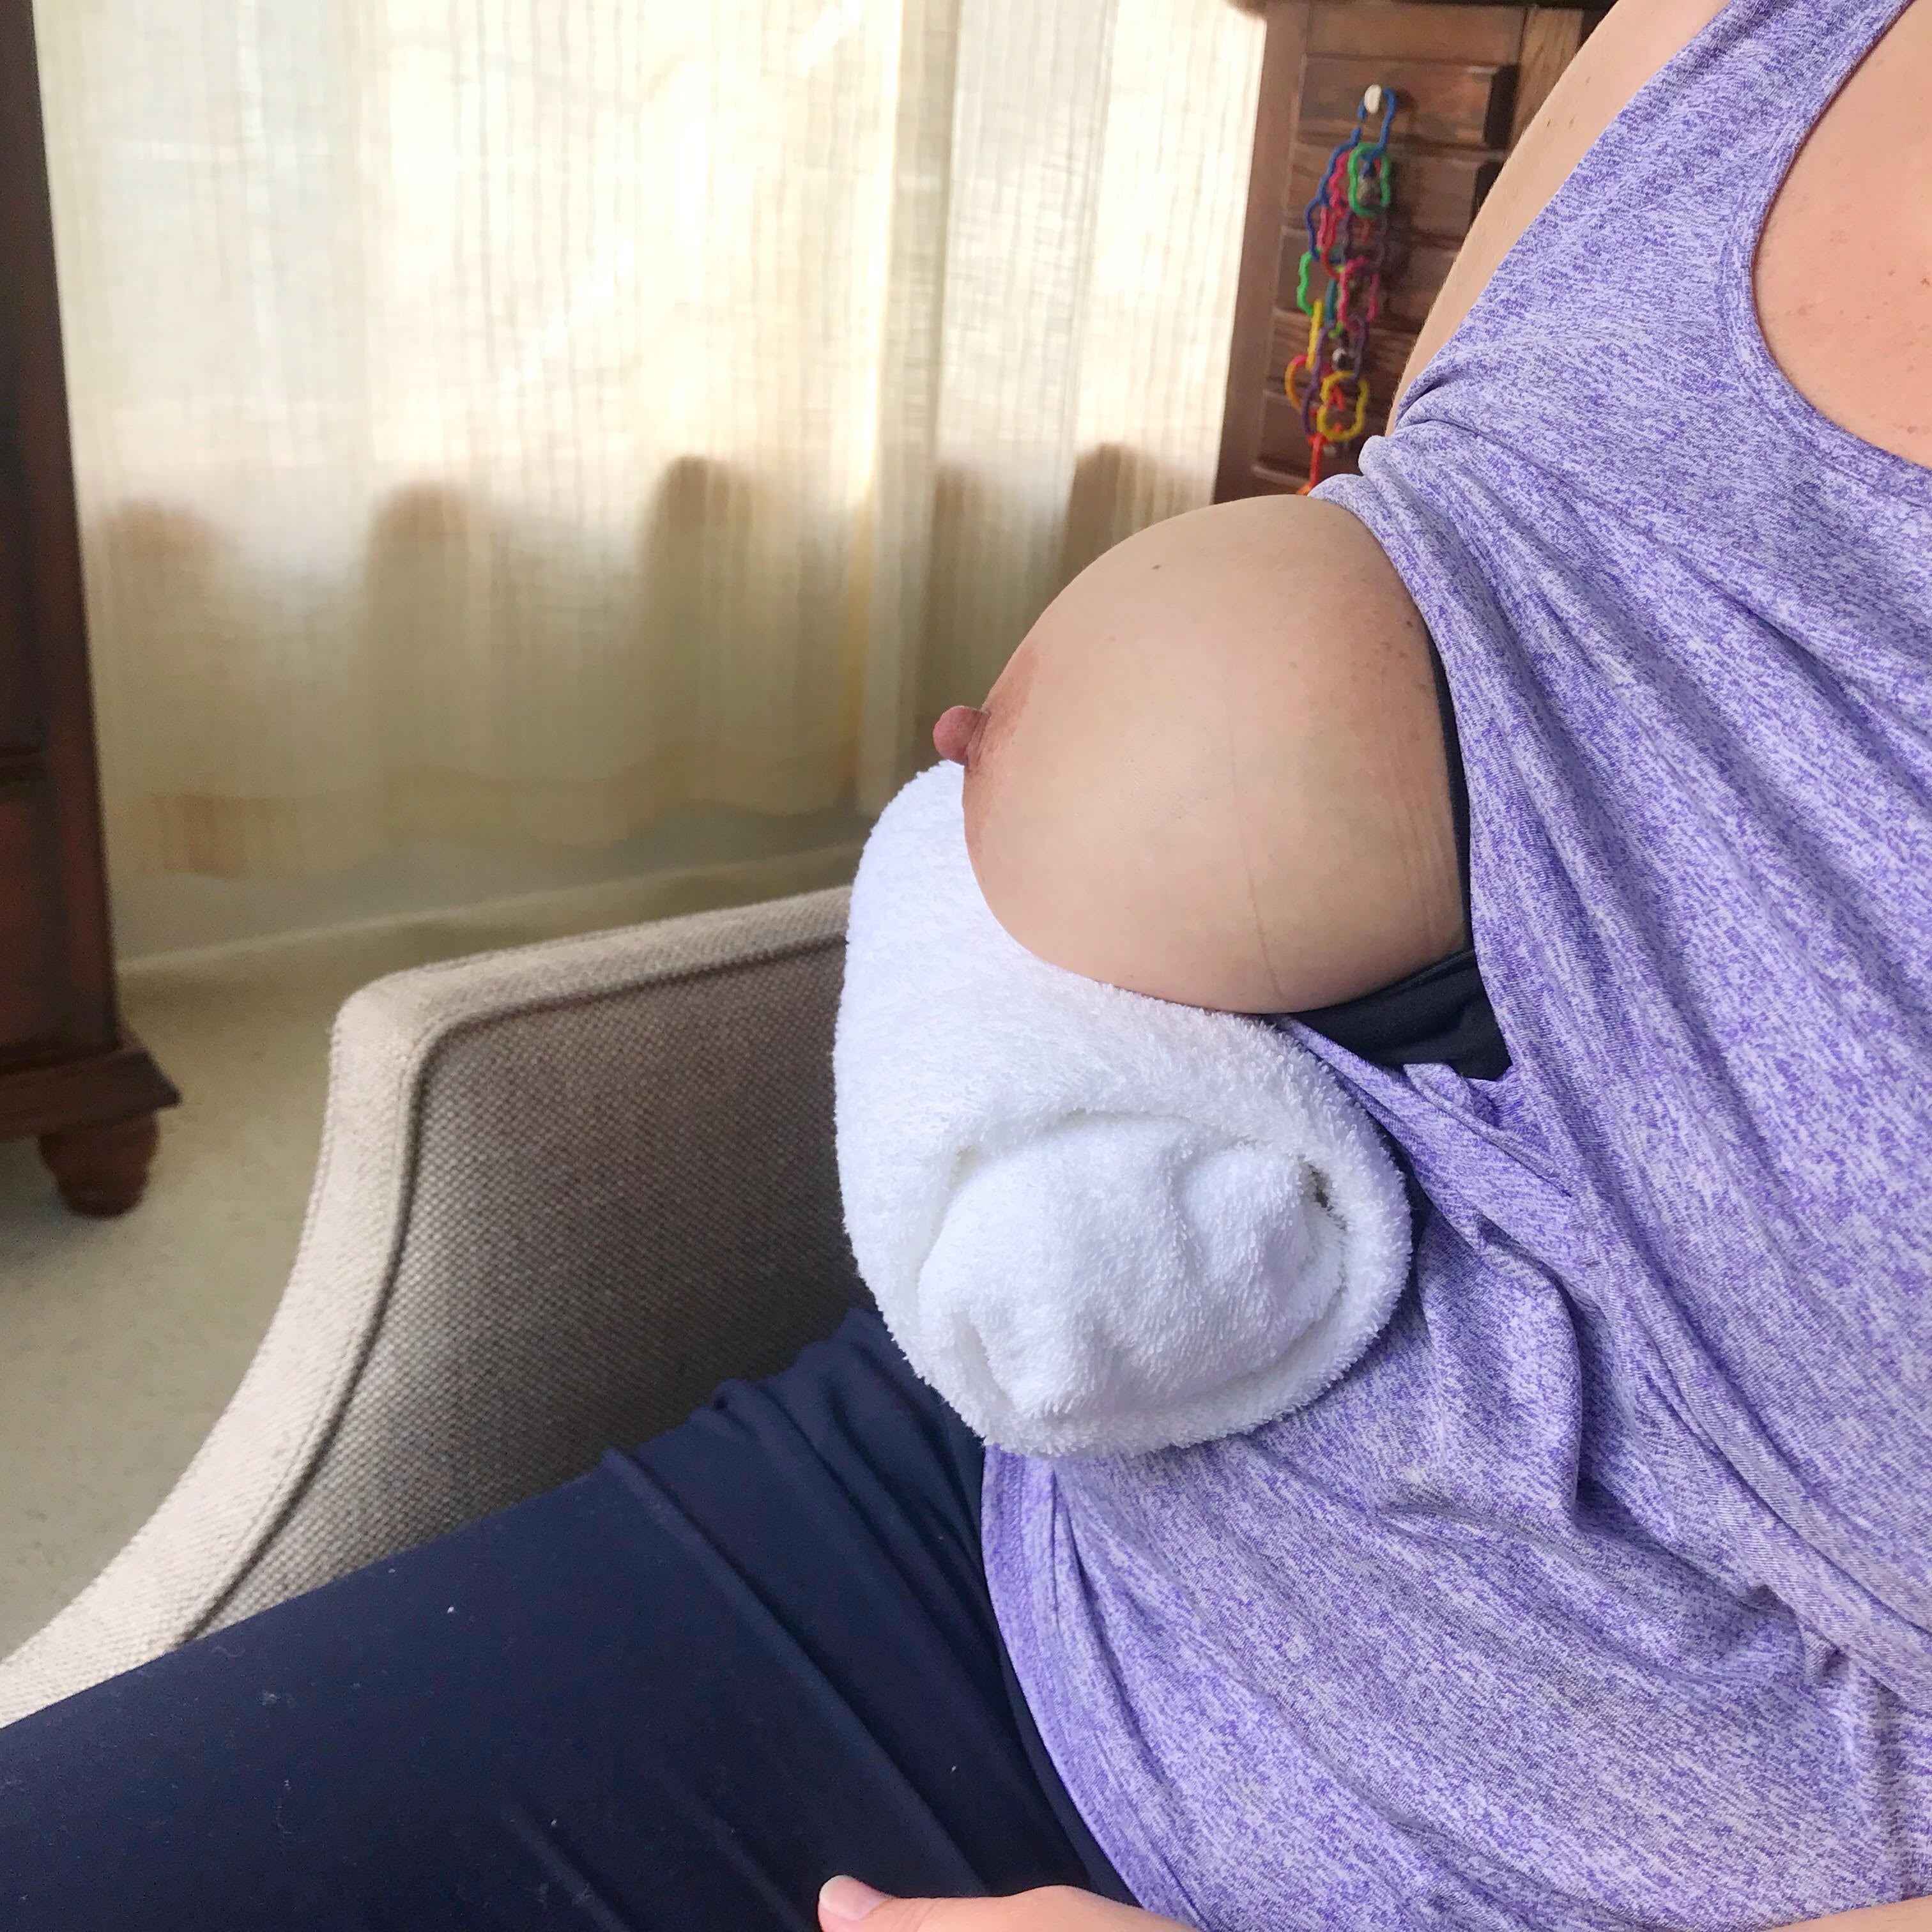 The best breastfeeding hacks